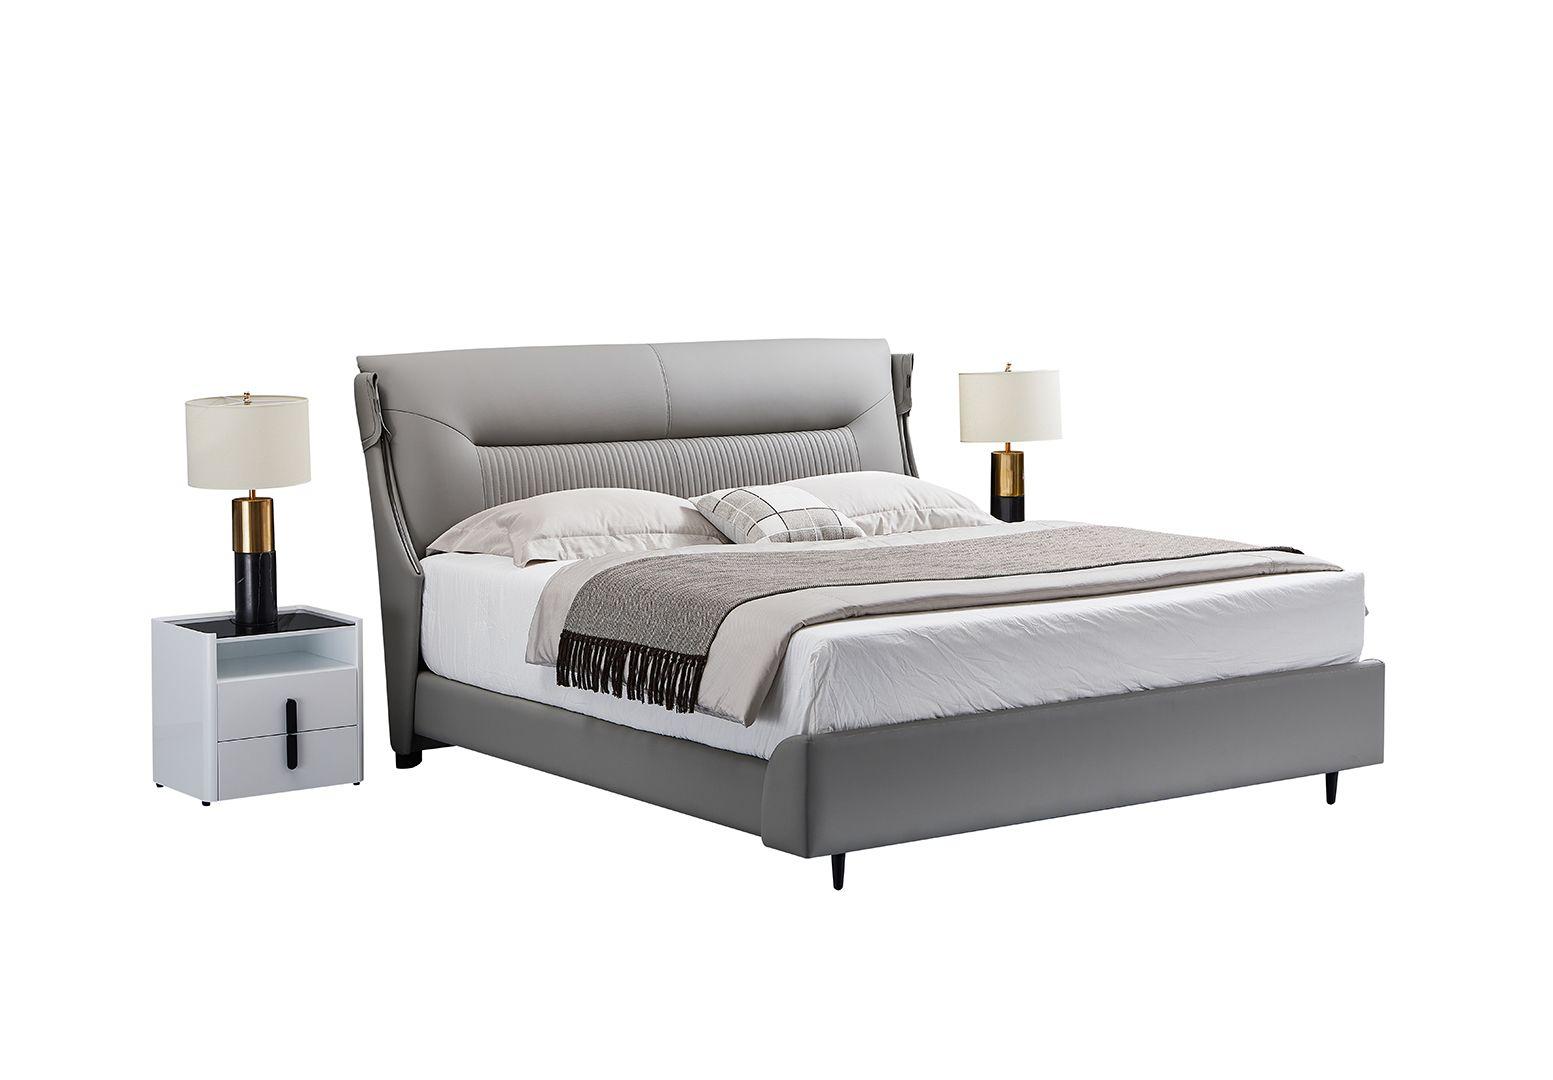 Contemporary, Modern Platform Bedroom Set B-Y2001-EK / NS-Y2001 B-Y2001-EK-3PC in Gray Genuine Leather